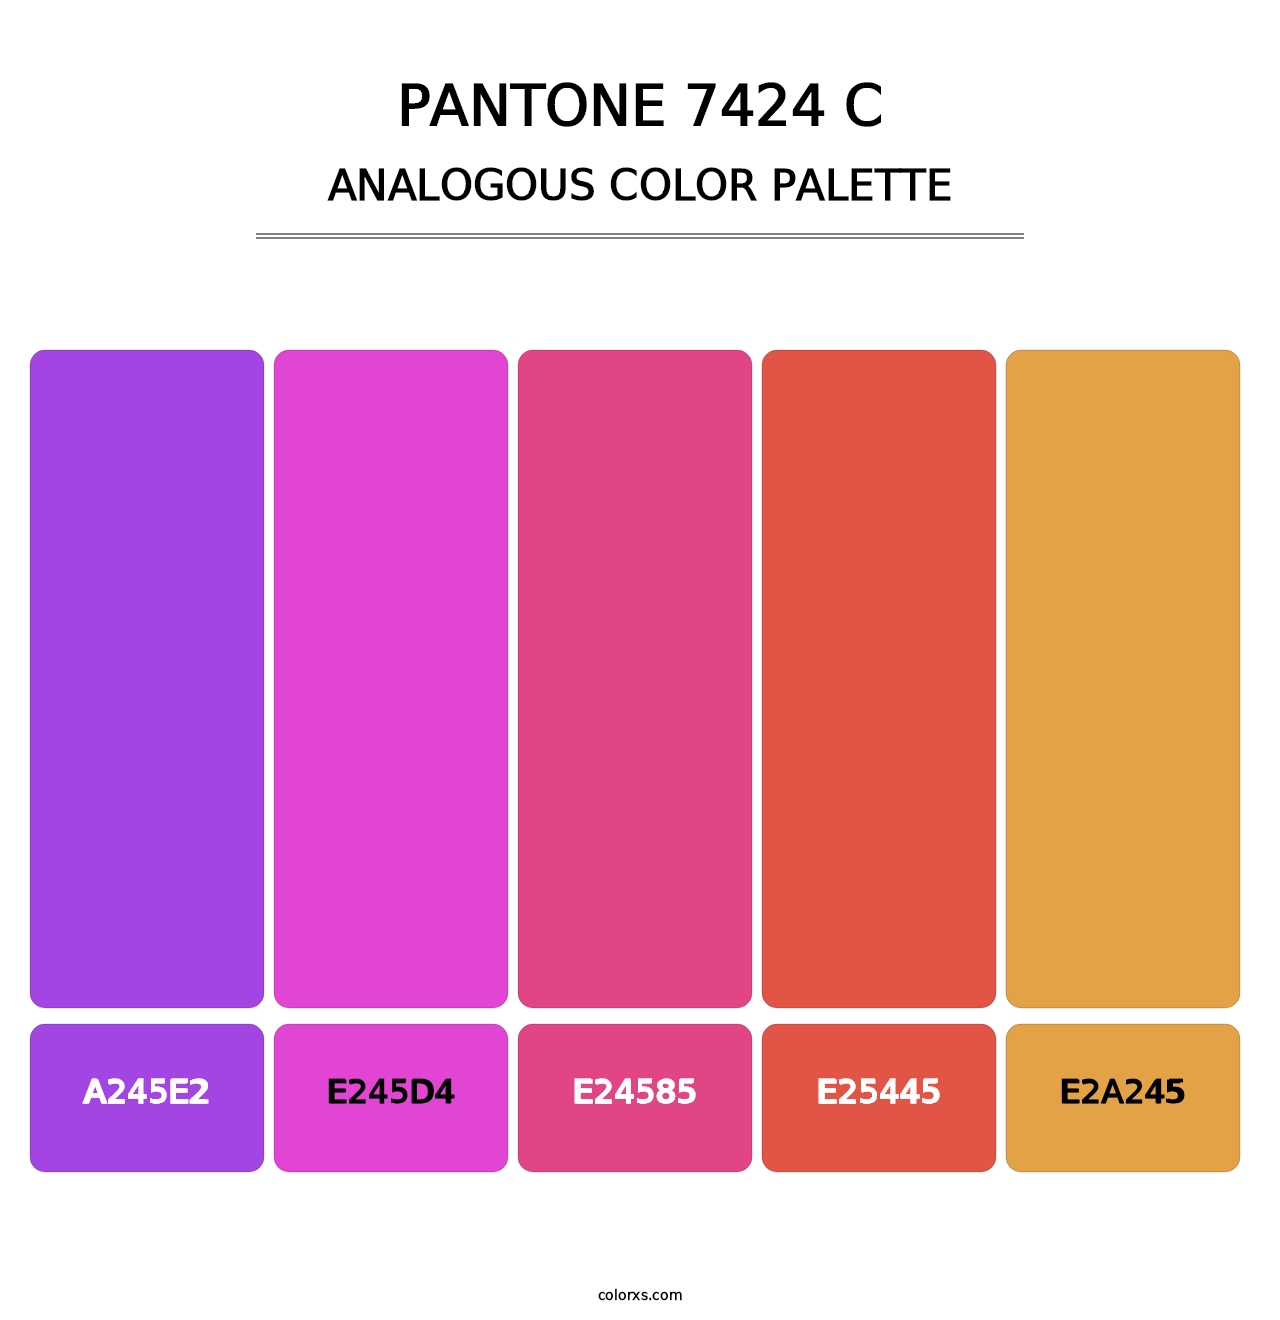 PANTONE 7424 C - Analogous Color Palette